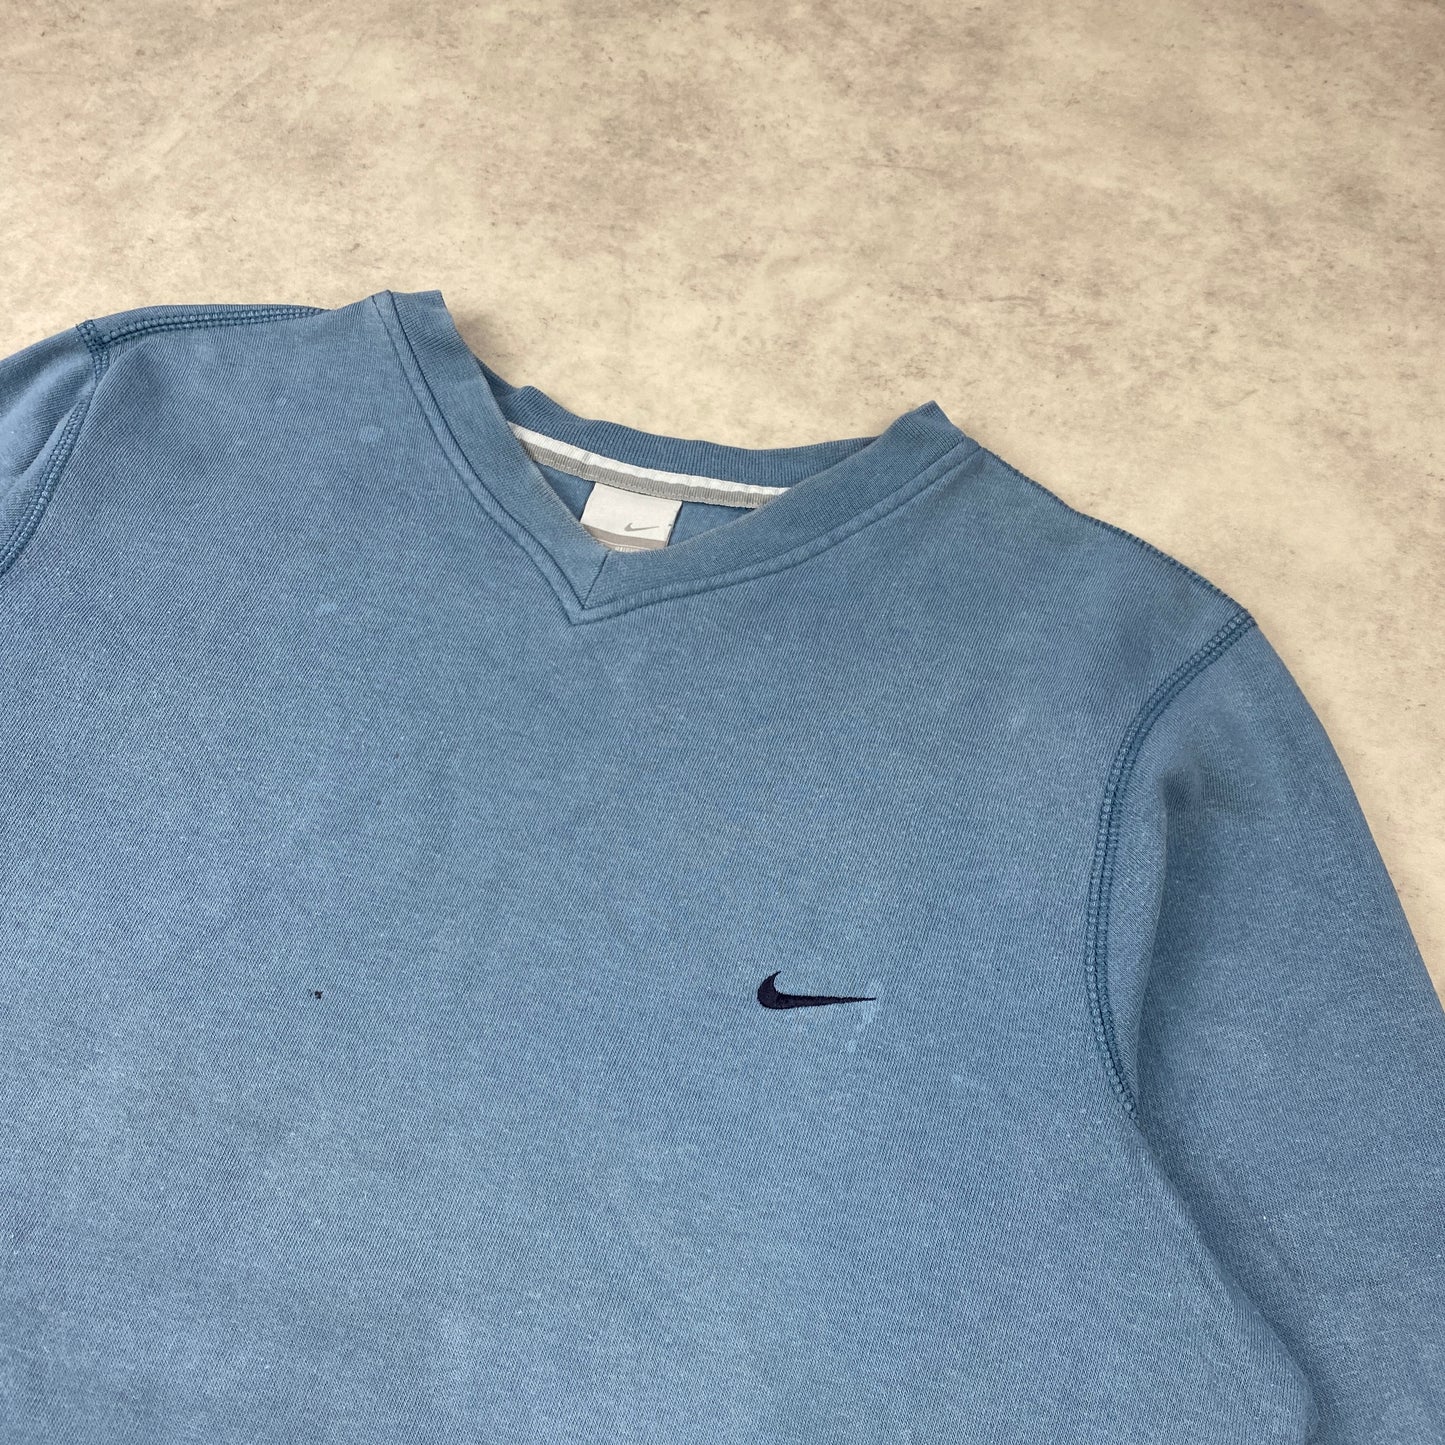 Nike sweater (M)